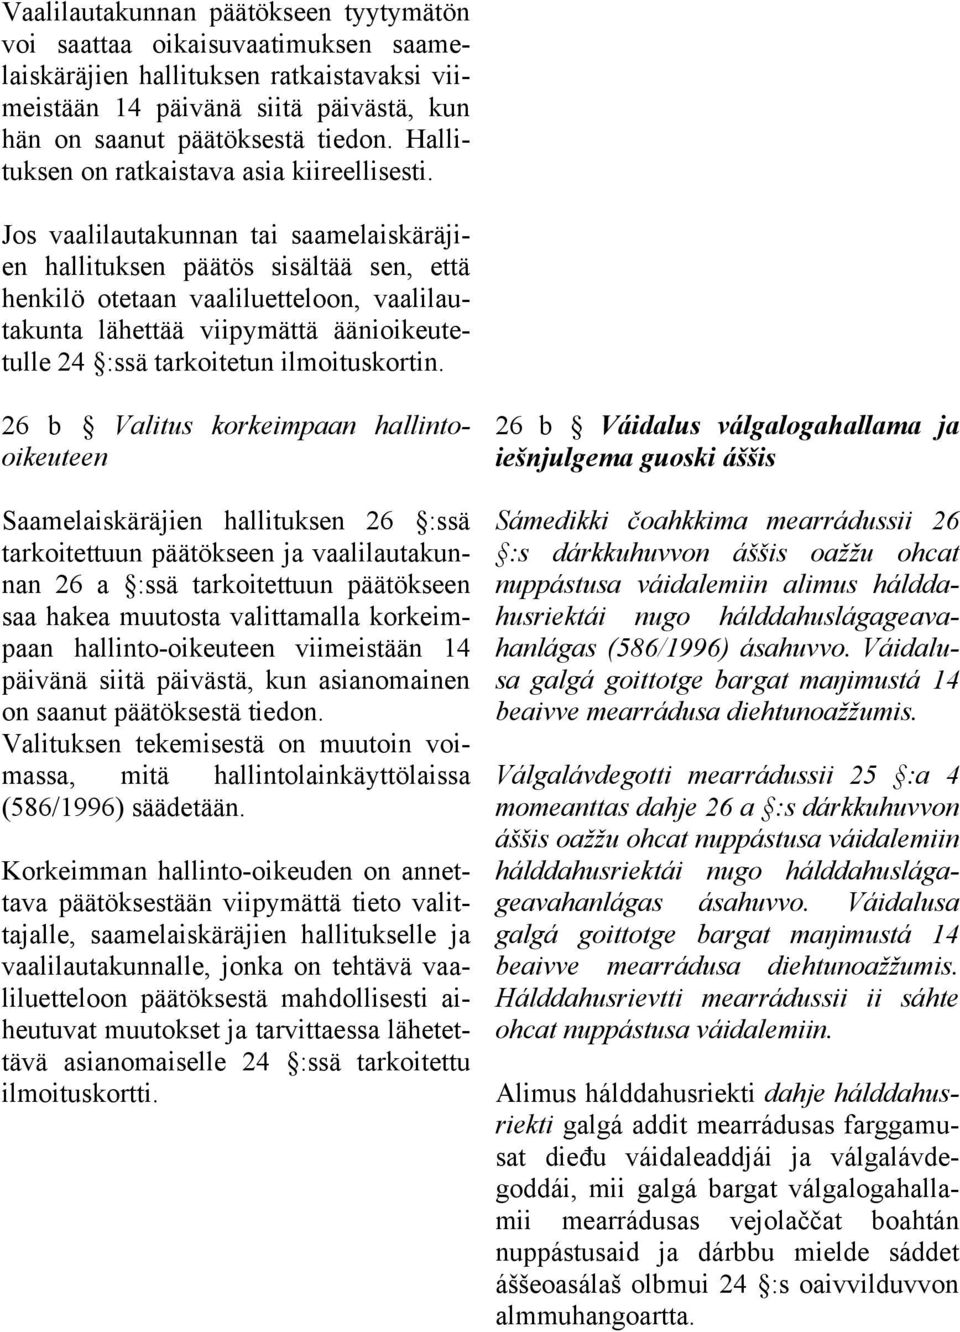 Jos vaalilautakunnan tai saamelaiskäräjien hallituksen päätös sisältää sen, että henkilö otetaan vaaliluetteloon, vaalilautakunta lähettää viipymättä äänioikeutetulle 24 :ssä tarkoitetun